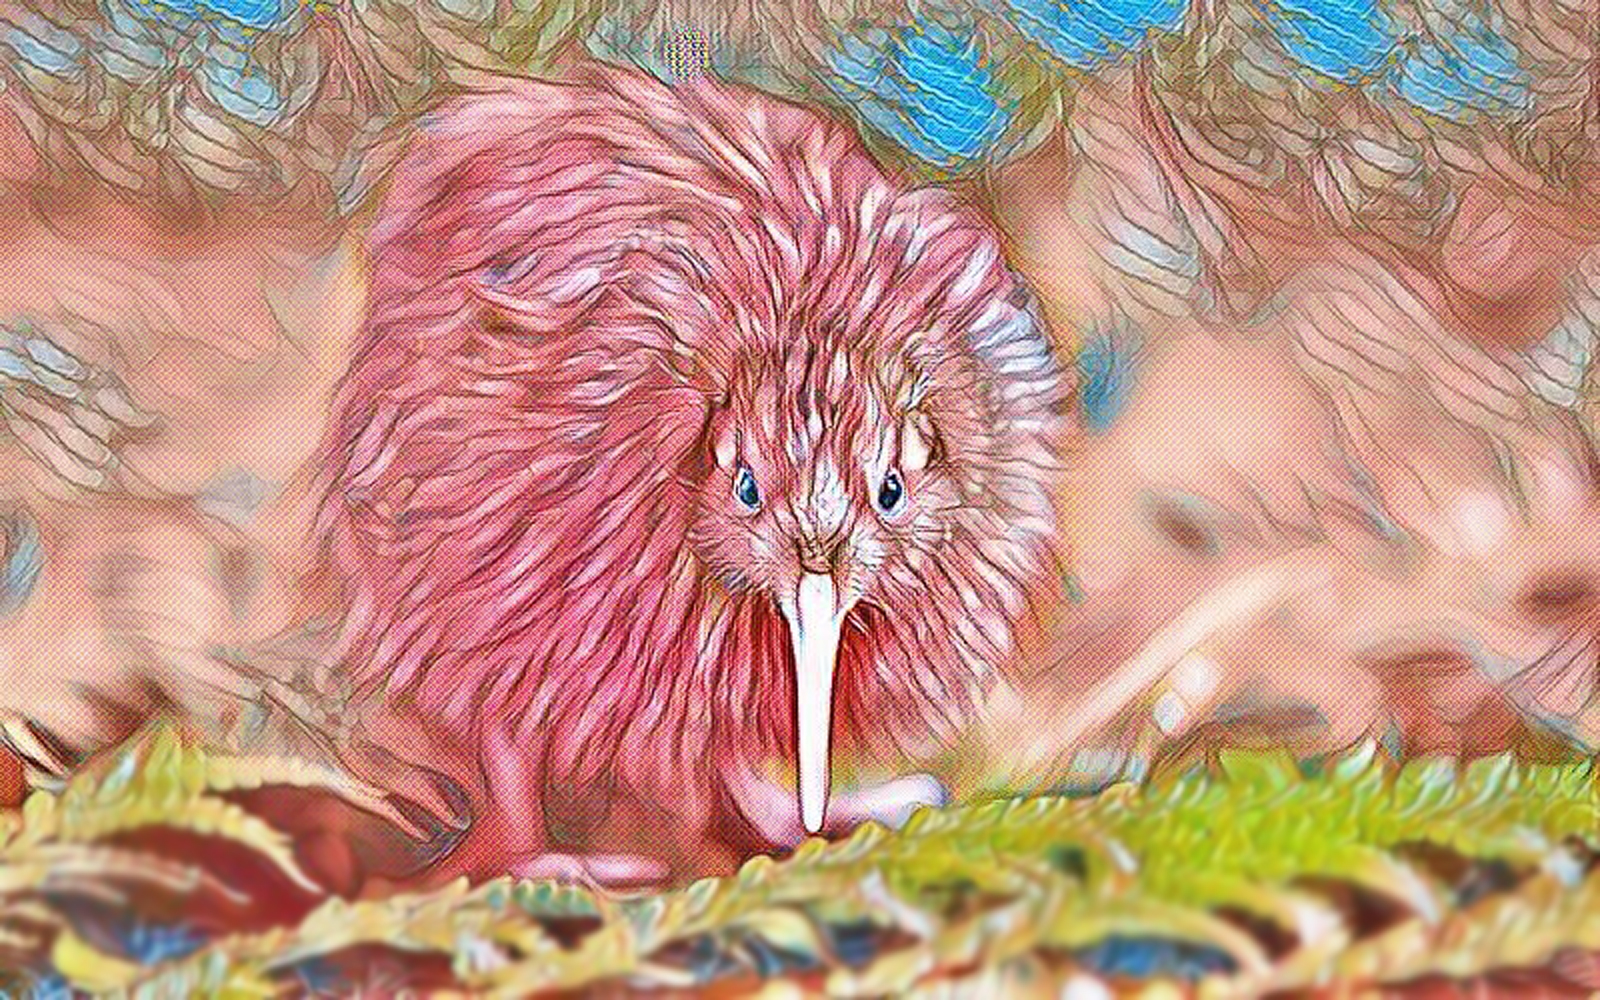 Māori Legend: How the kiwi bird lost his wings – a story by Alwyn Owen